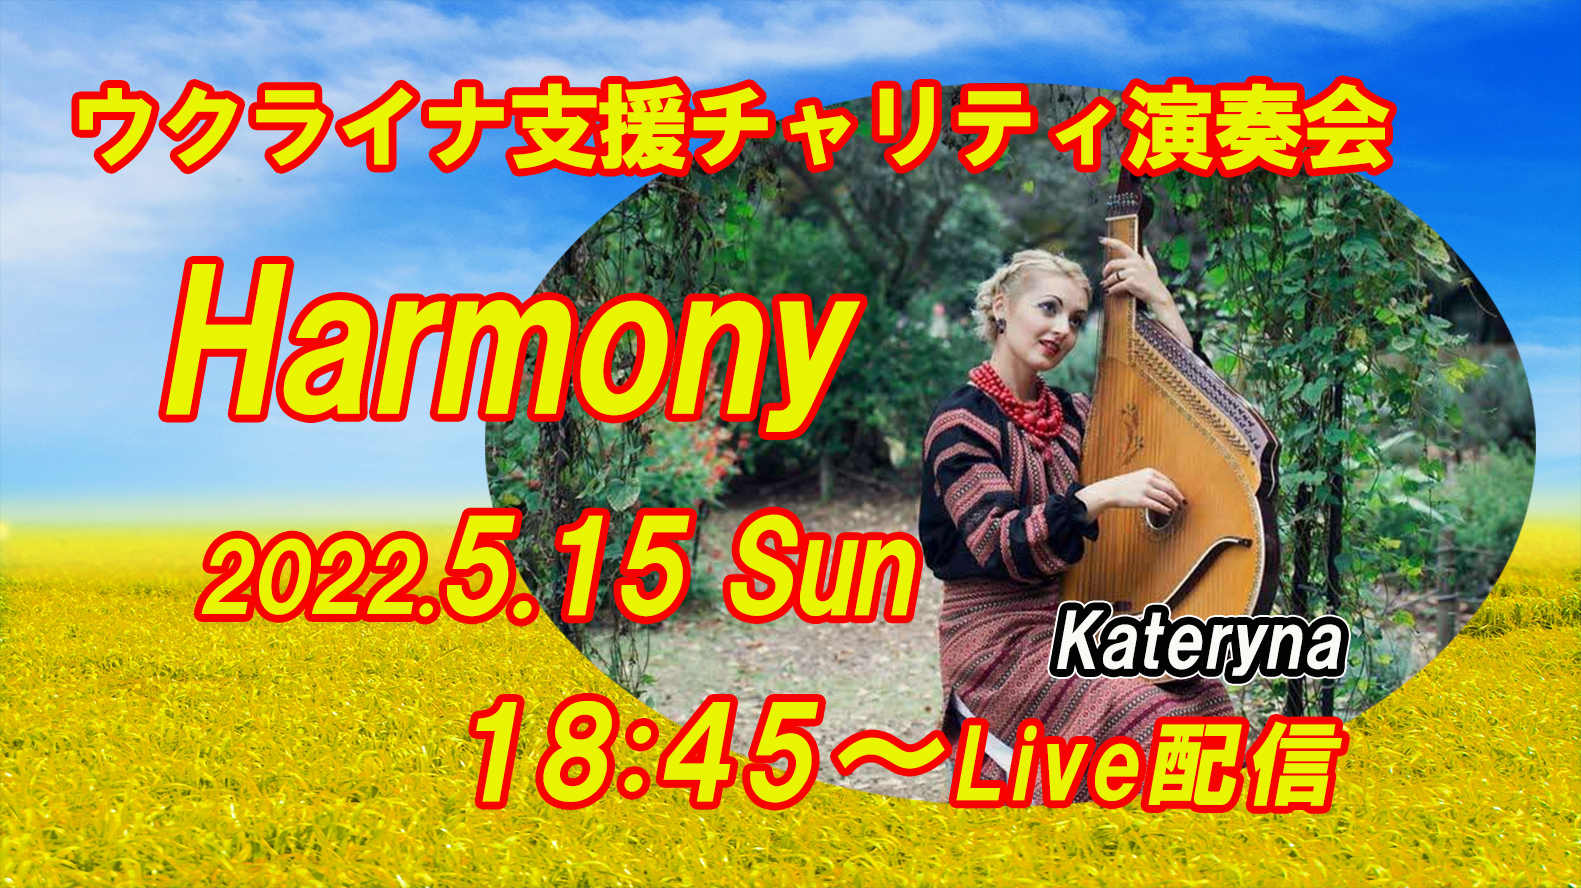 ウクライナ支援チャリティ演奏会"Harmony"を開催します